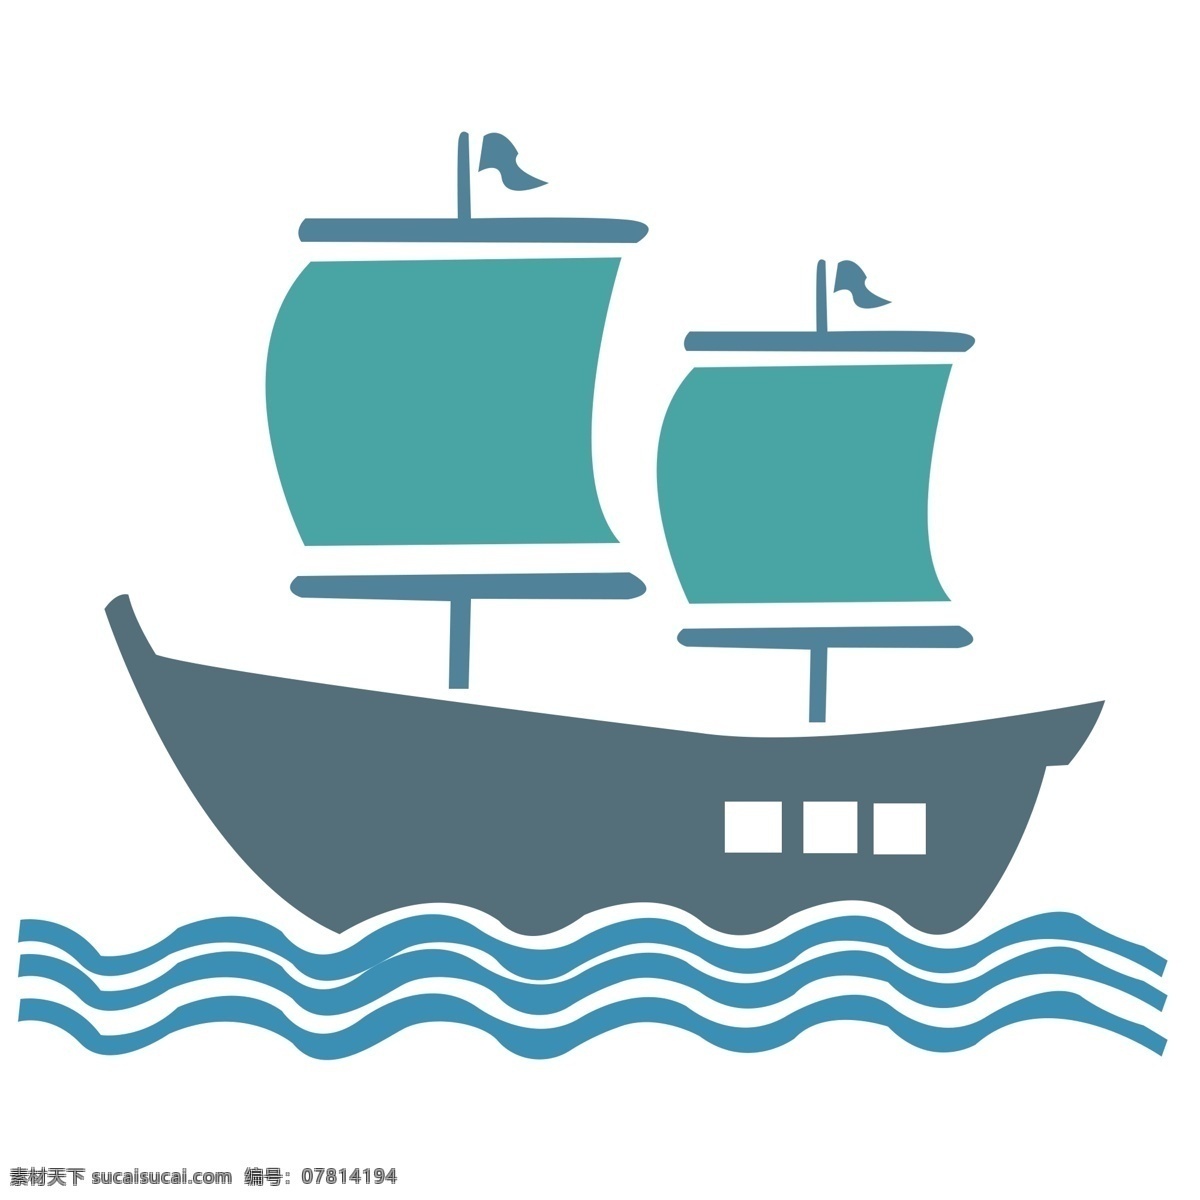 卡通 手绘 平面 帆船 一帆风顺 吉祥 祝福 碧海 蓝天 乘船 船帆 水上设施 交通工具